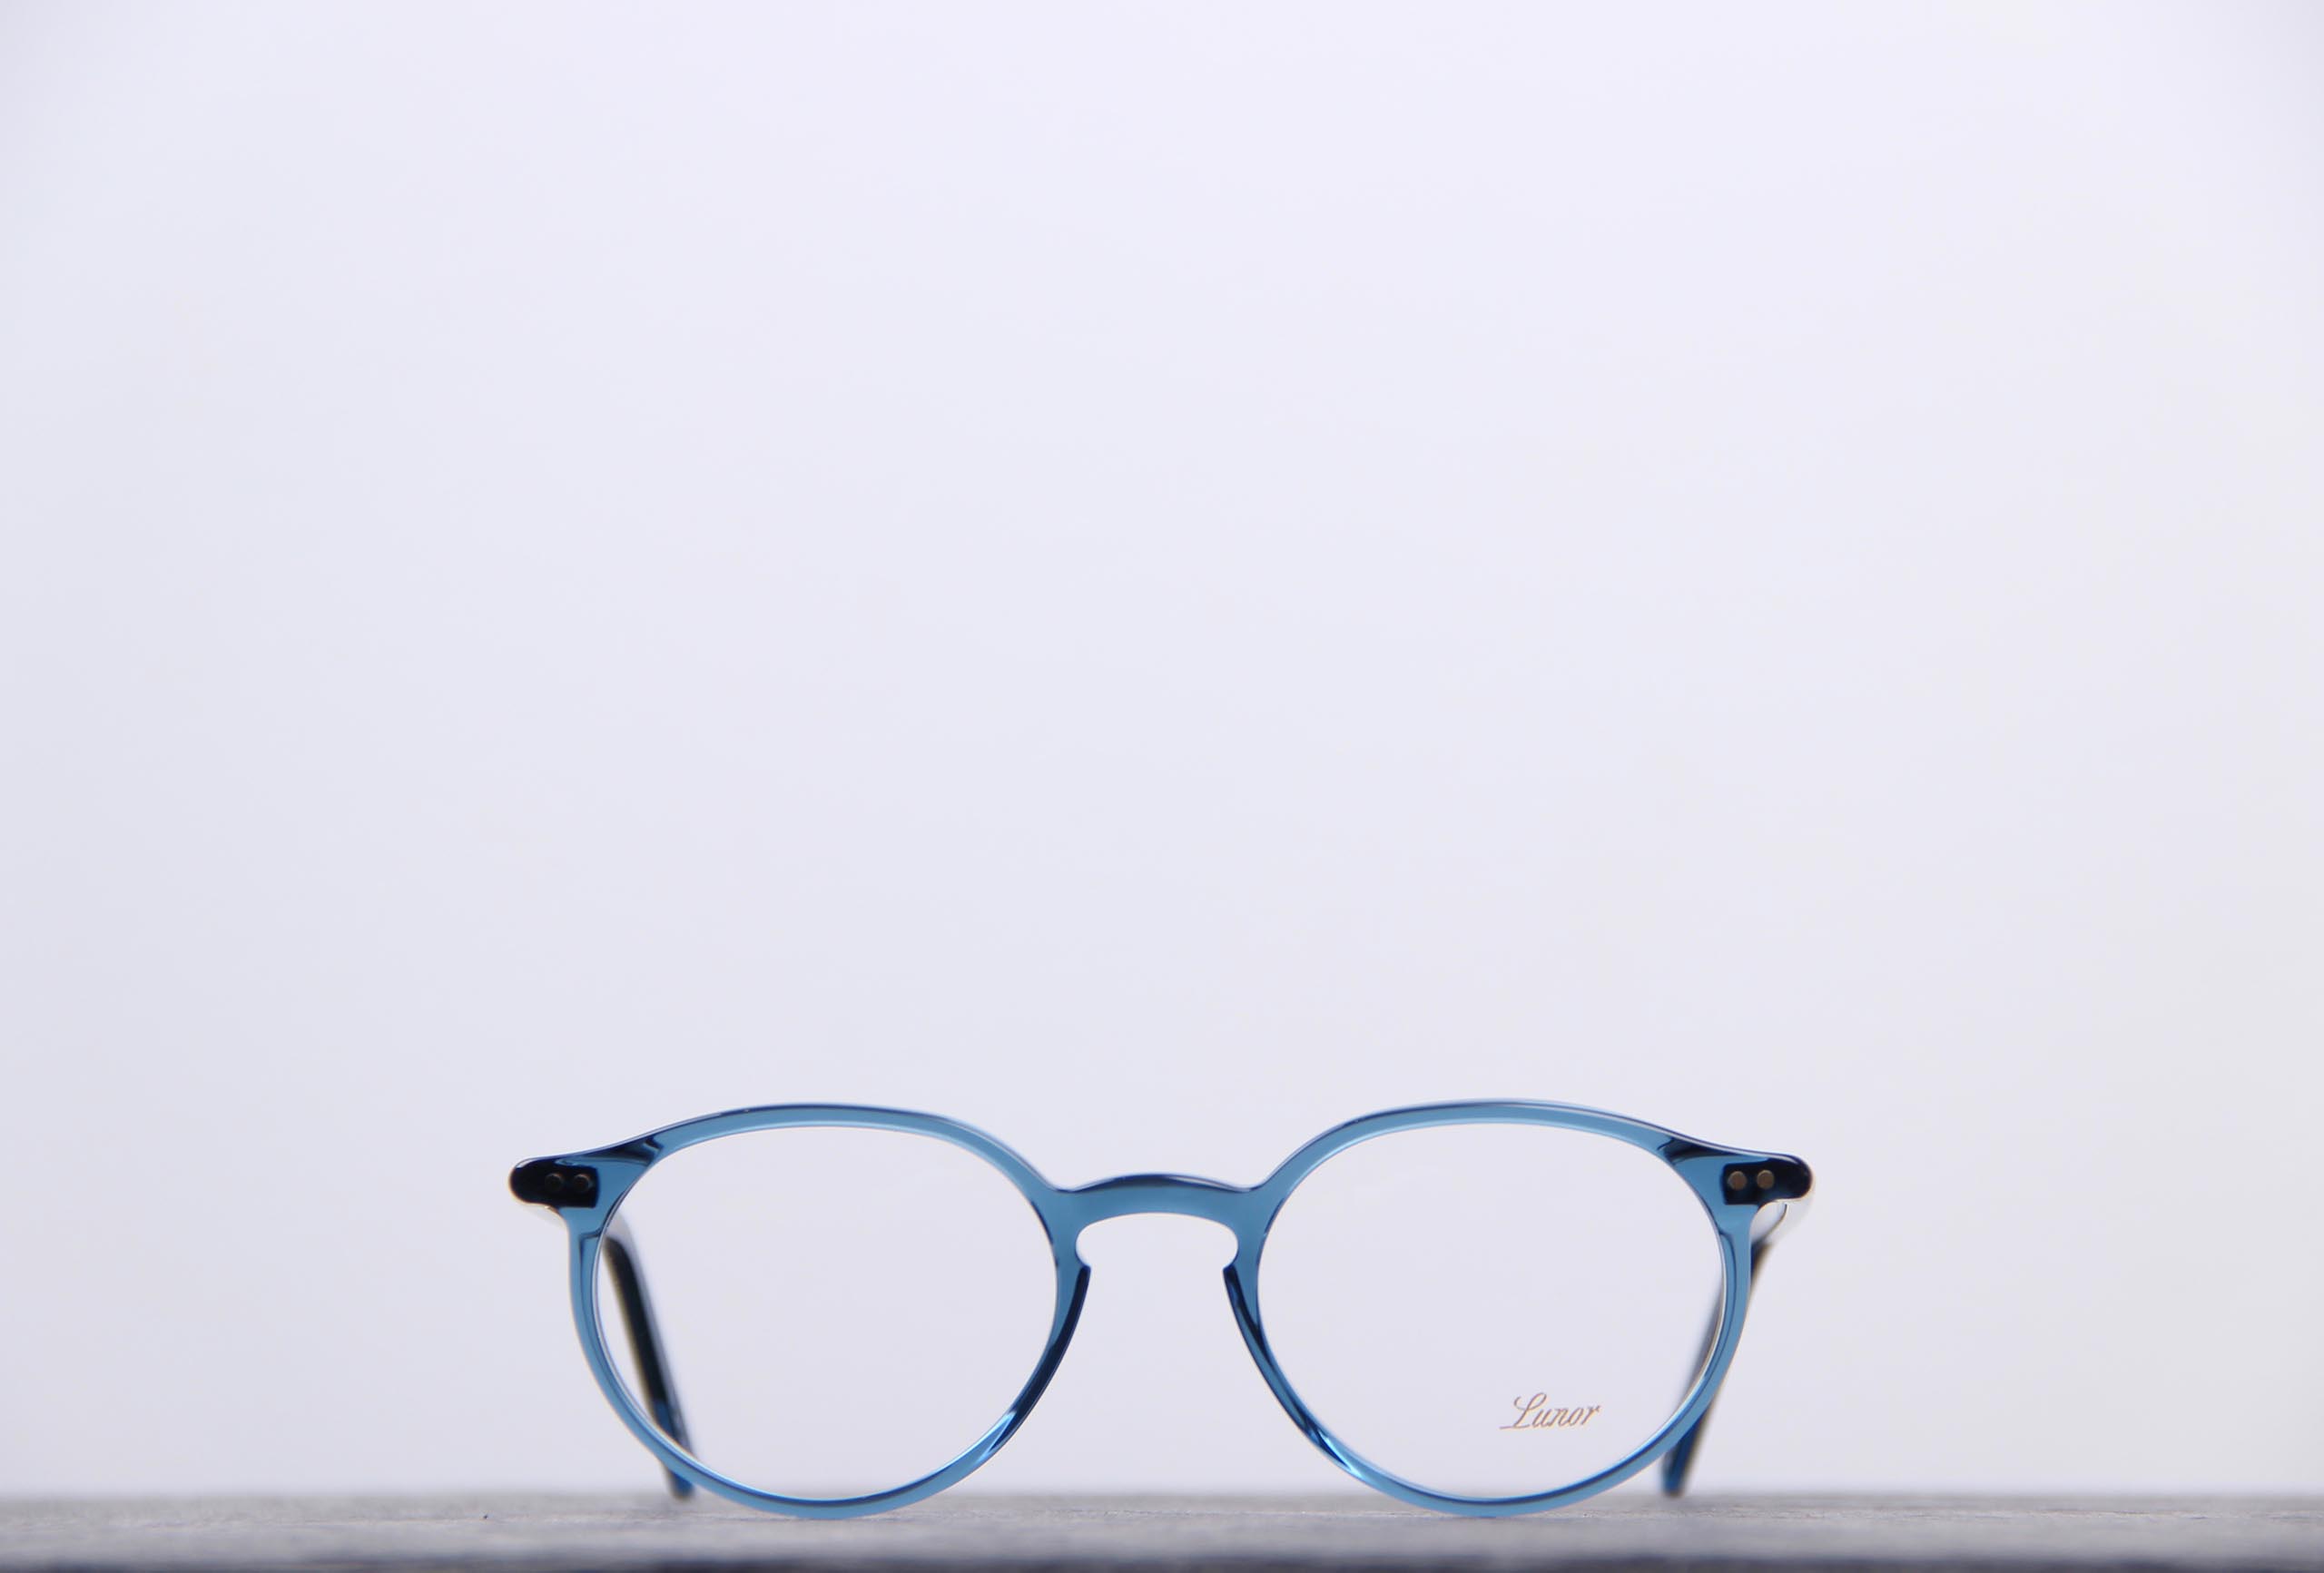 lunor lunettes bleues pour la vue